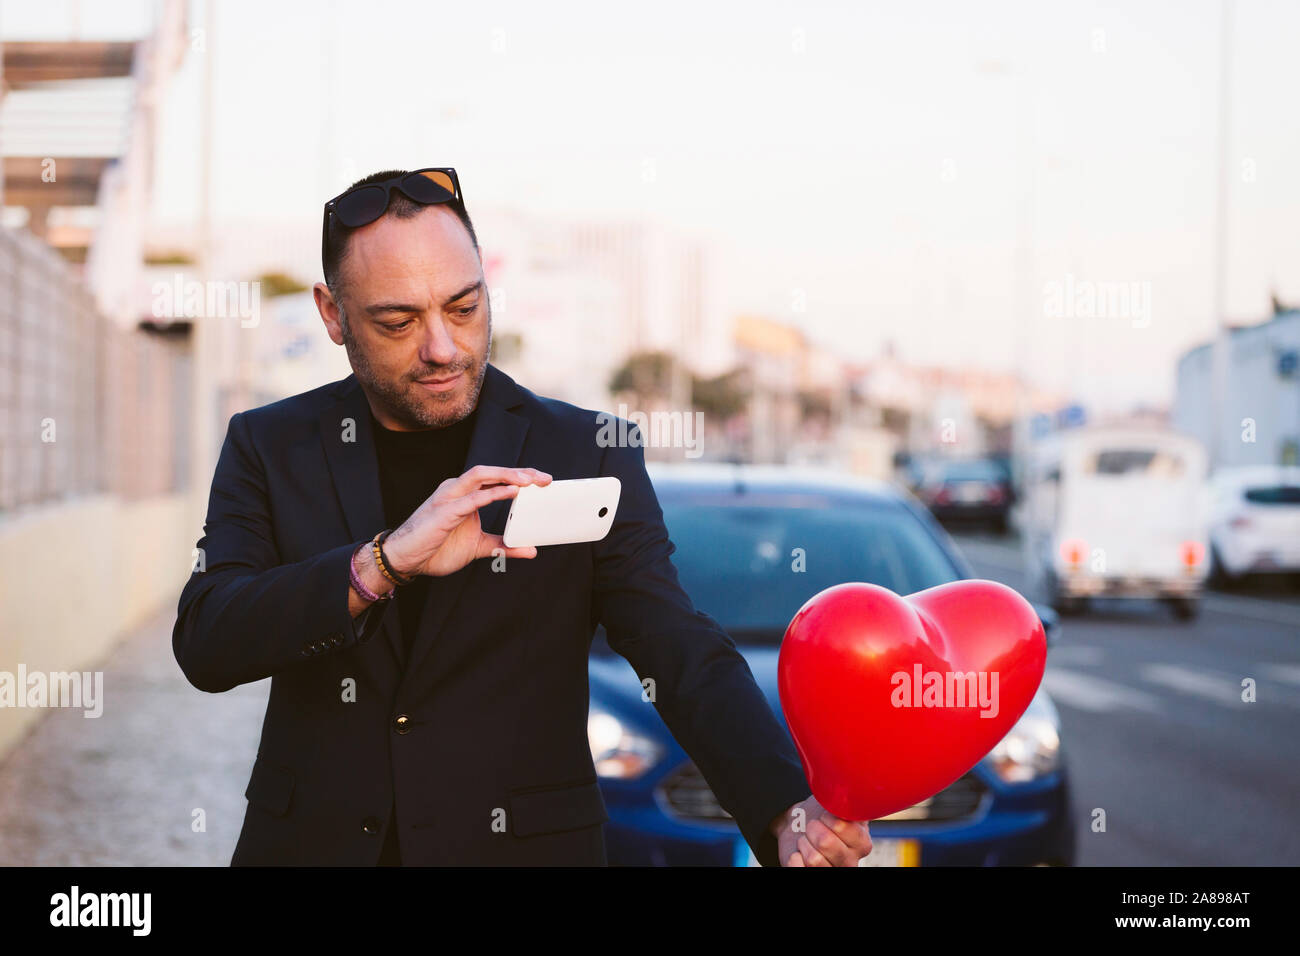 Homme photographiant un ballon en forme de cœur rouge Banque D'Images